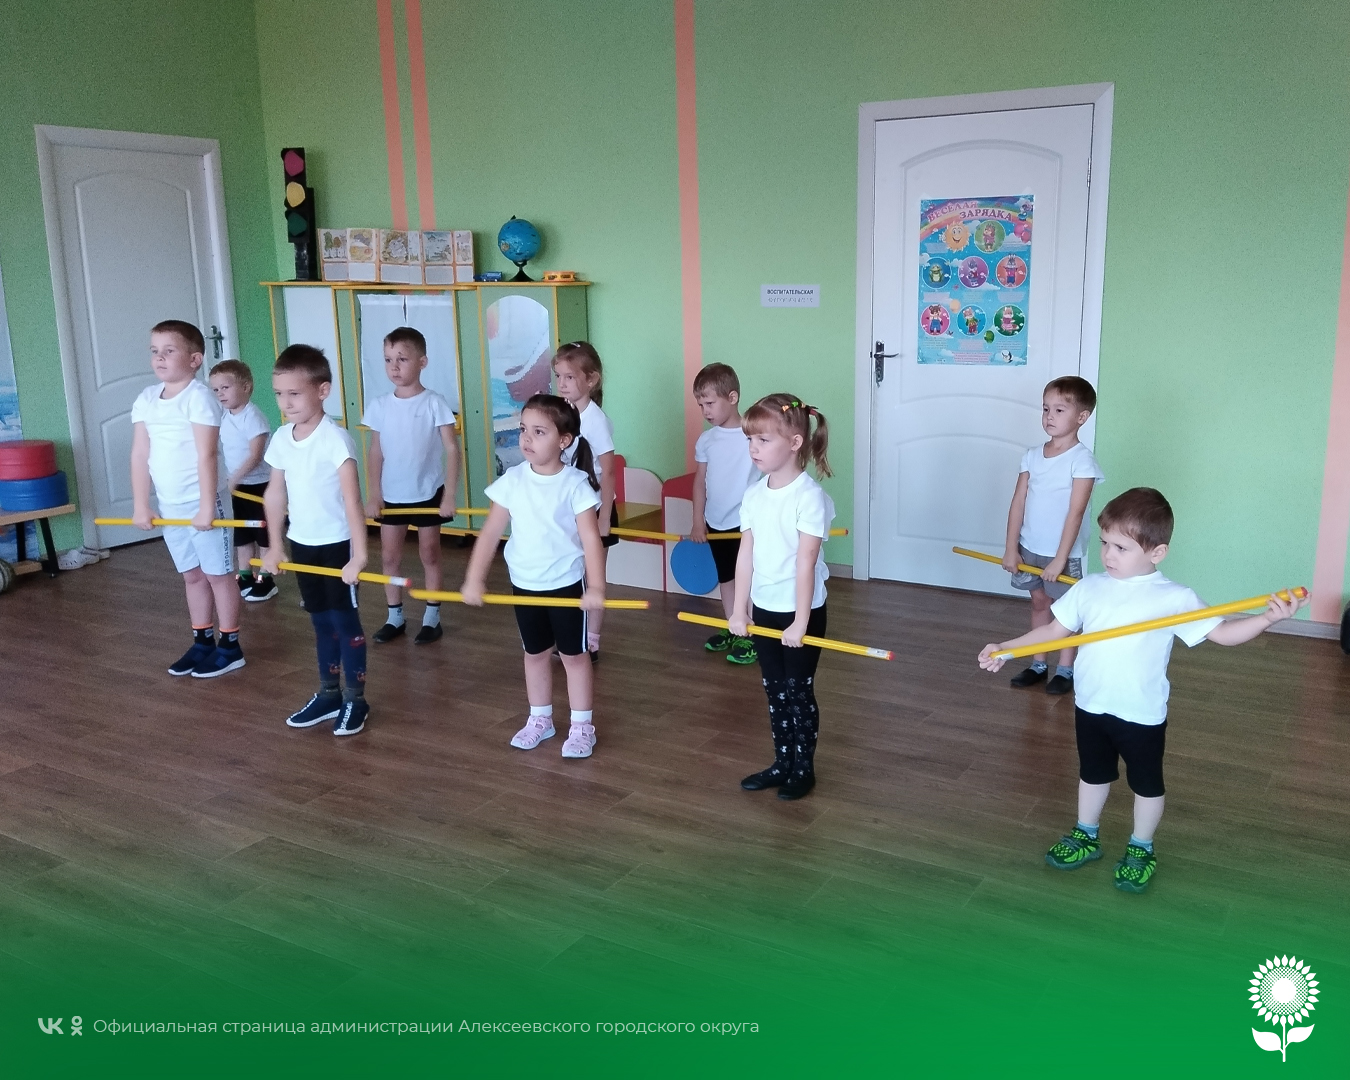 В детских садах Алексеевского городского округа прошло занимательное мероприятие «Калейдоскоп увлечений».